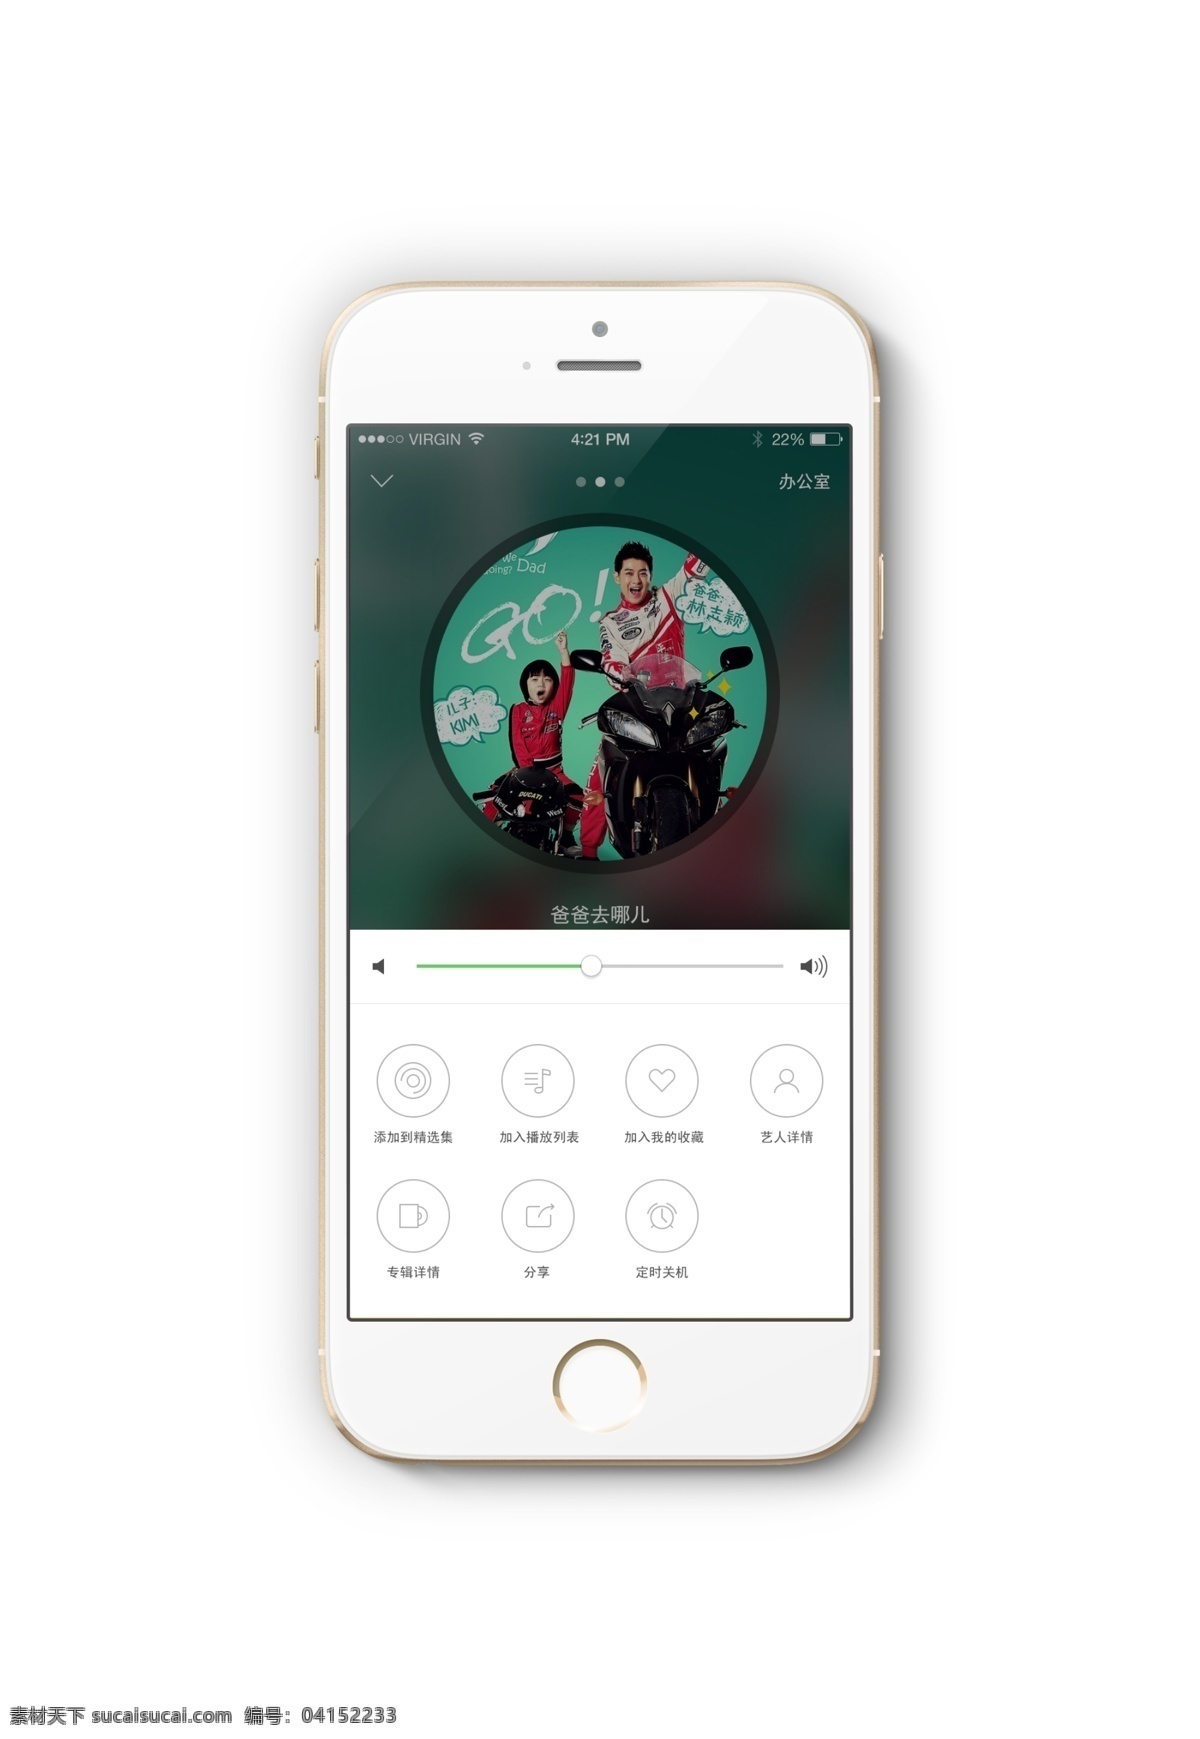 ui界面 音乐界面 播放界面 音乐app 音乐图标 iphone6 模板 苹果手机 小图标 功能性图标 界面弹框 ui素材 白色